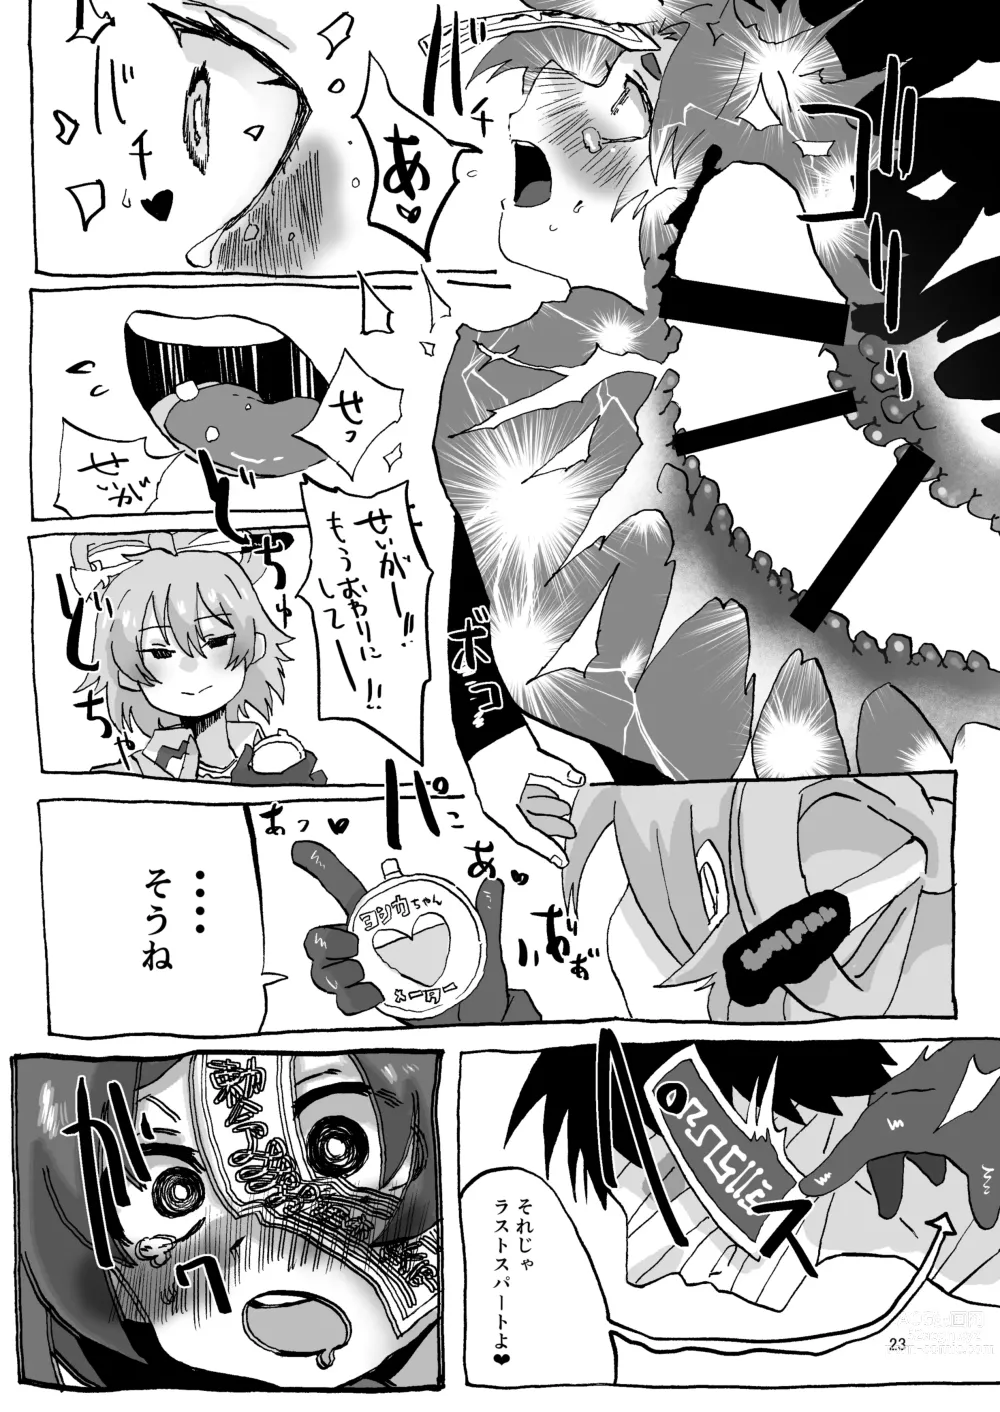 Page 23 of doujinshi Yoshika-chan Maintenance